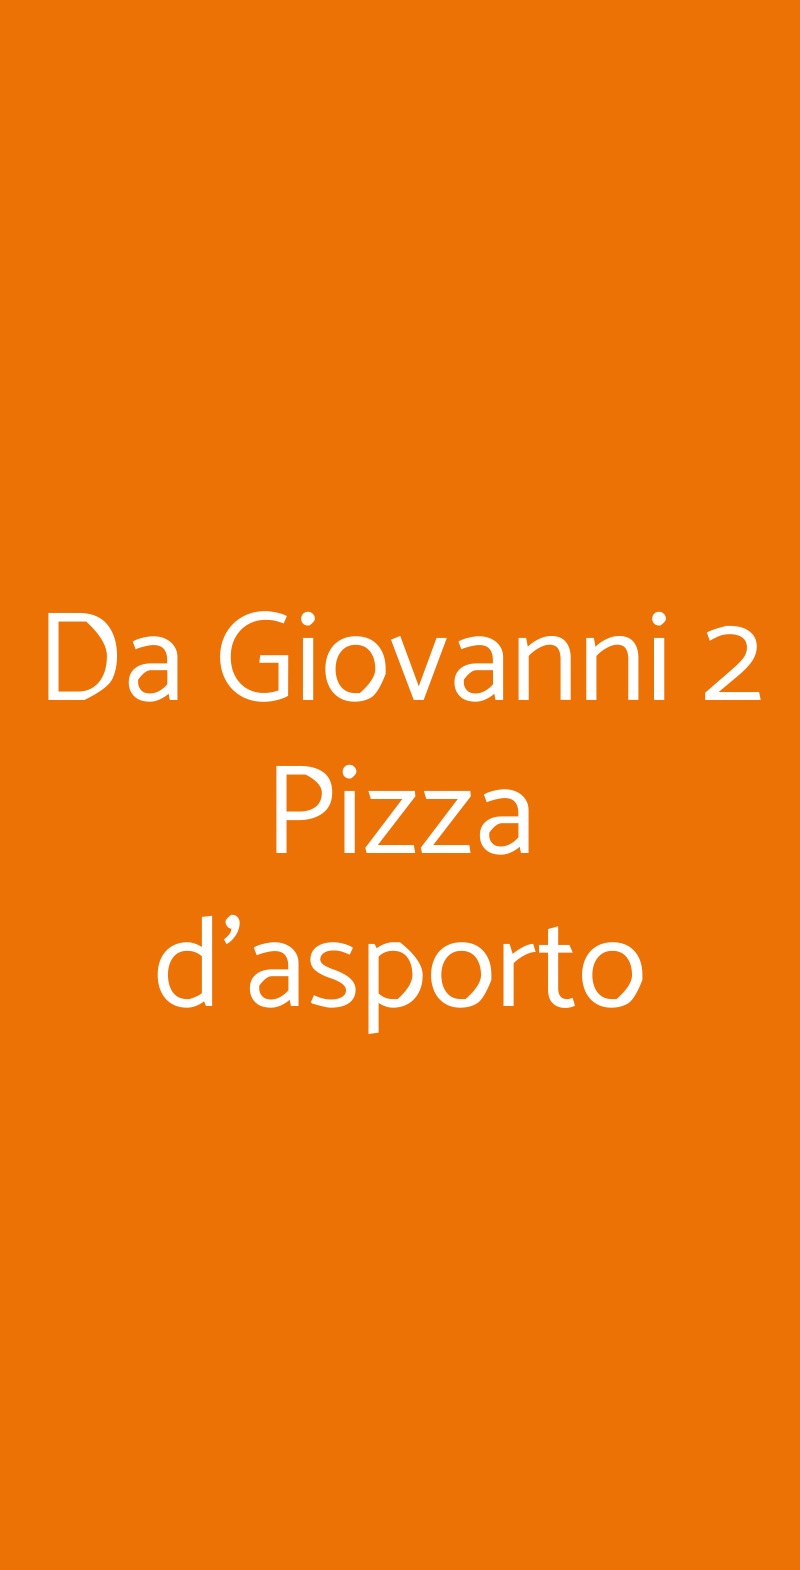 Da Giovanni 2 Pizza d'asporto Sanremo menù 1 pagina